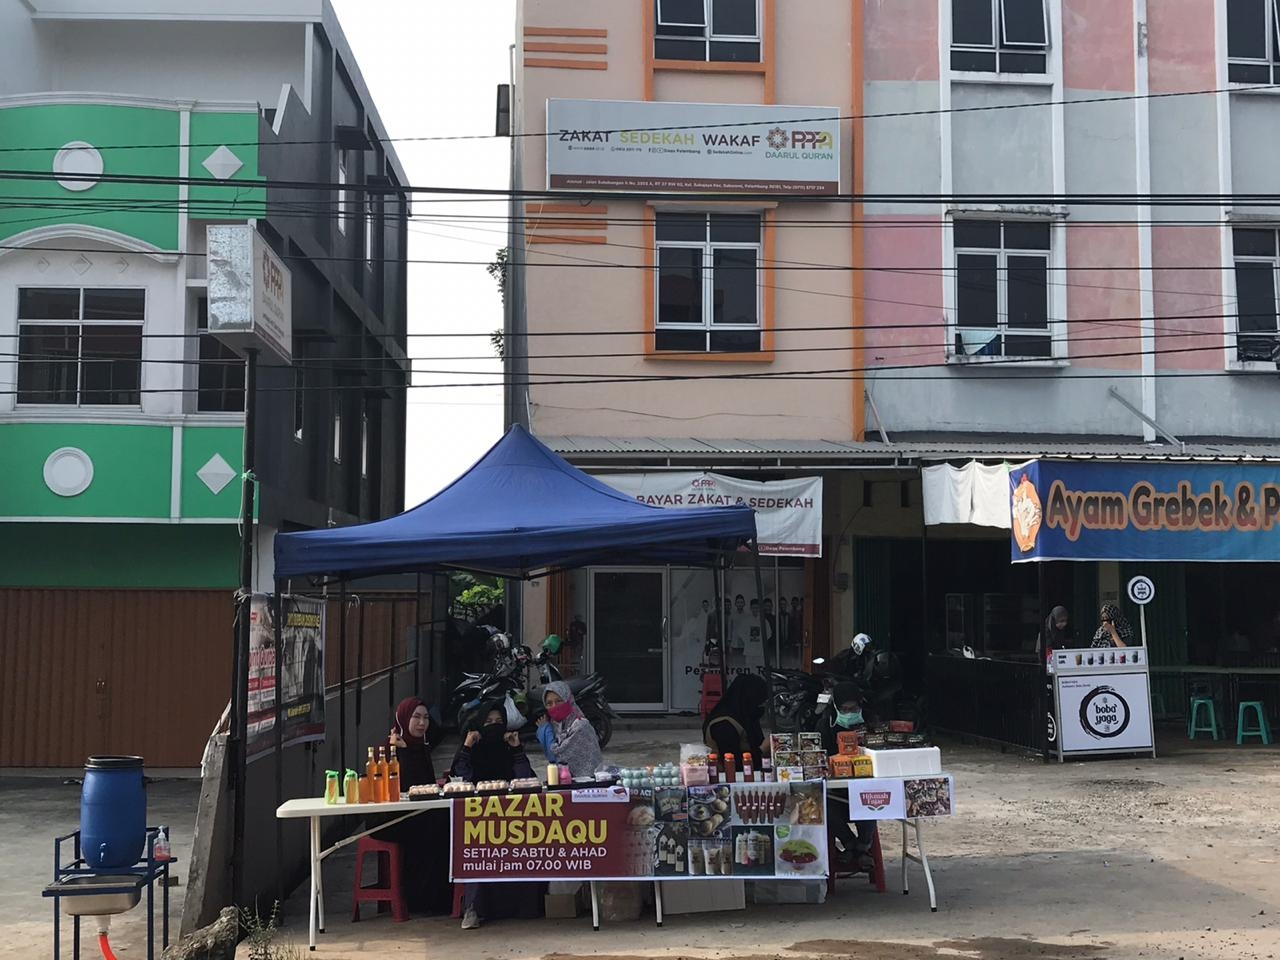 PPPA Daarul Qurâ€™an Dukung UMKM Lewat Bazar Akhir Pekan